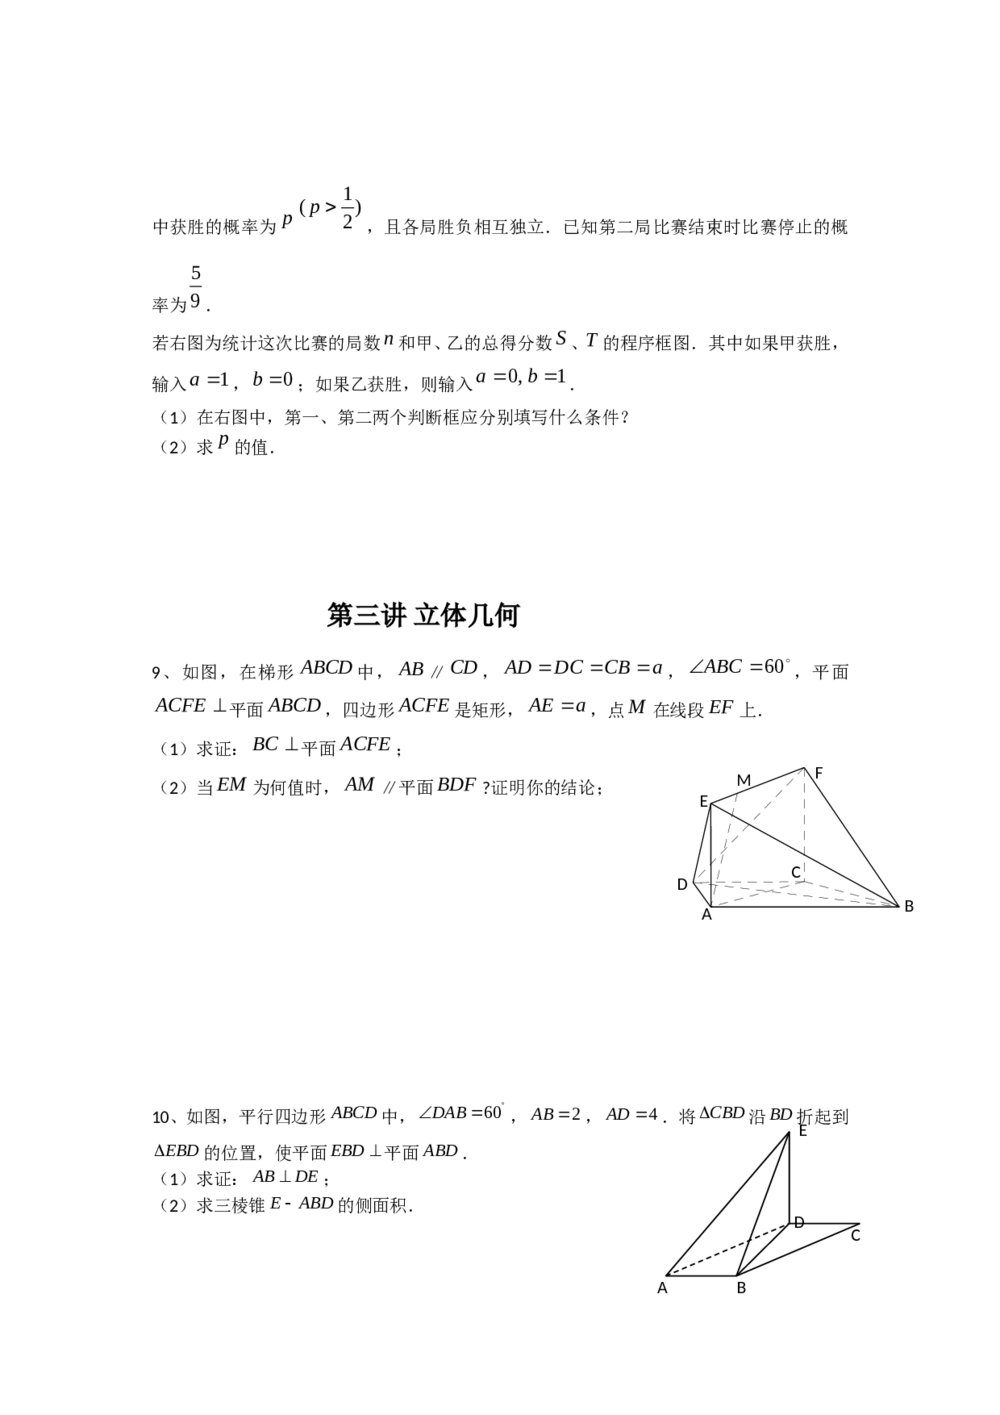 广东省广州市2012年高考考前查漏补缺题(数学文科A组)5